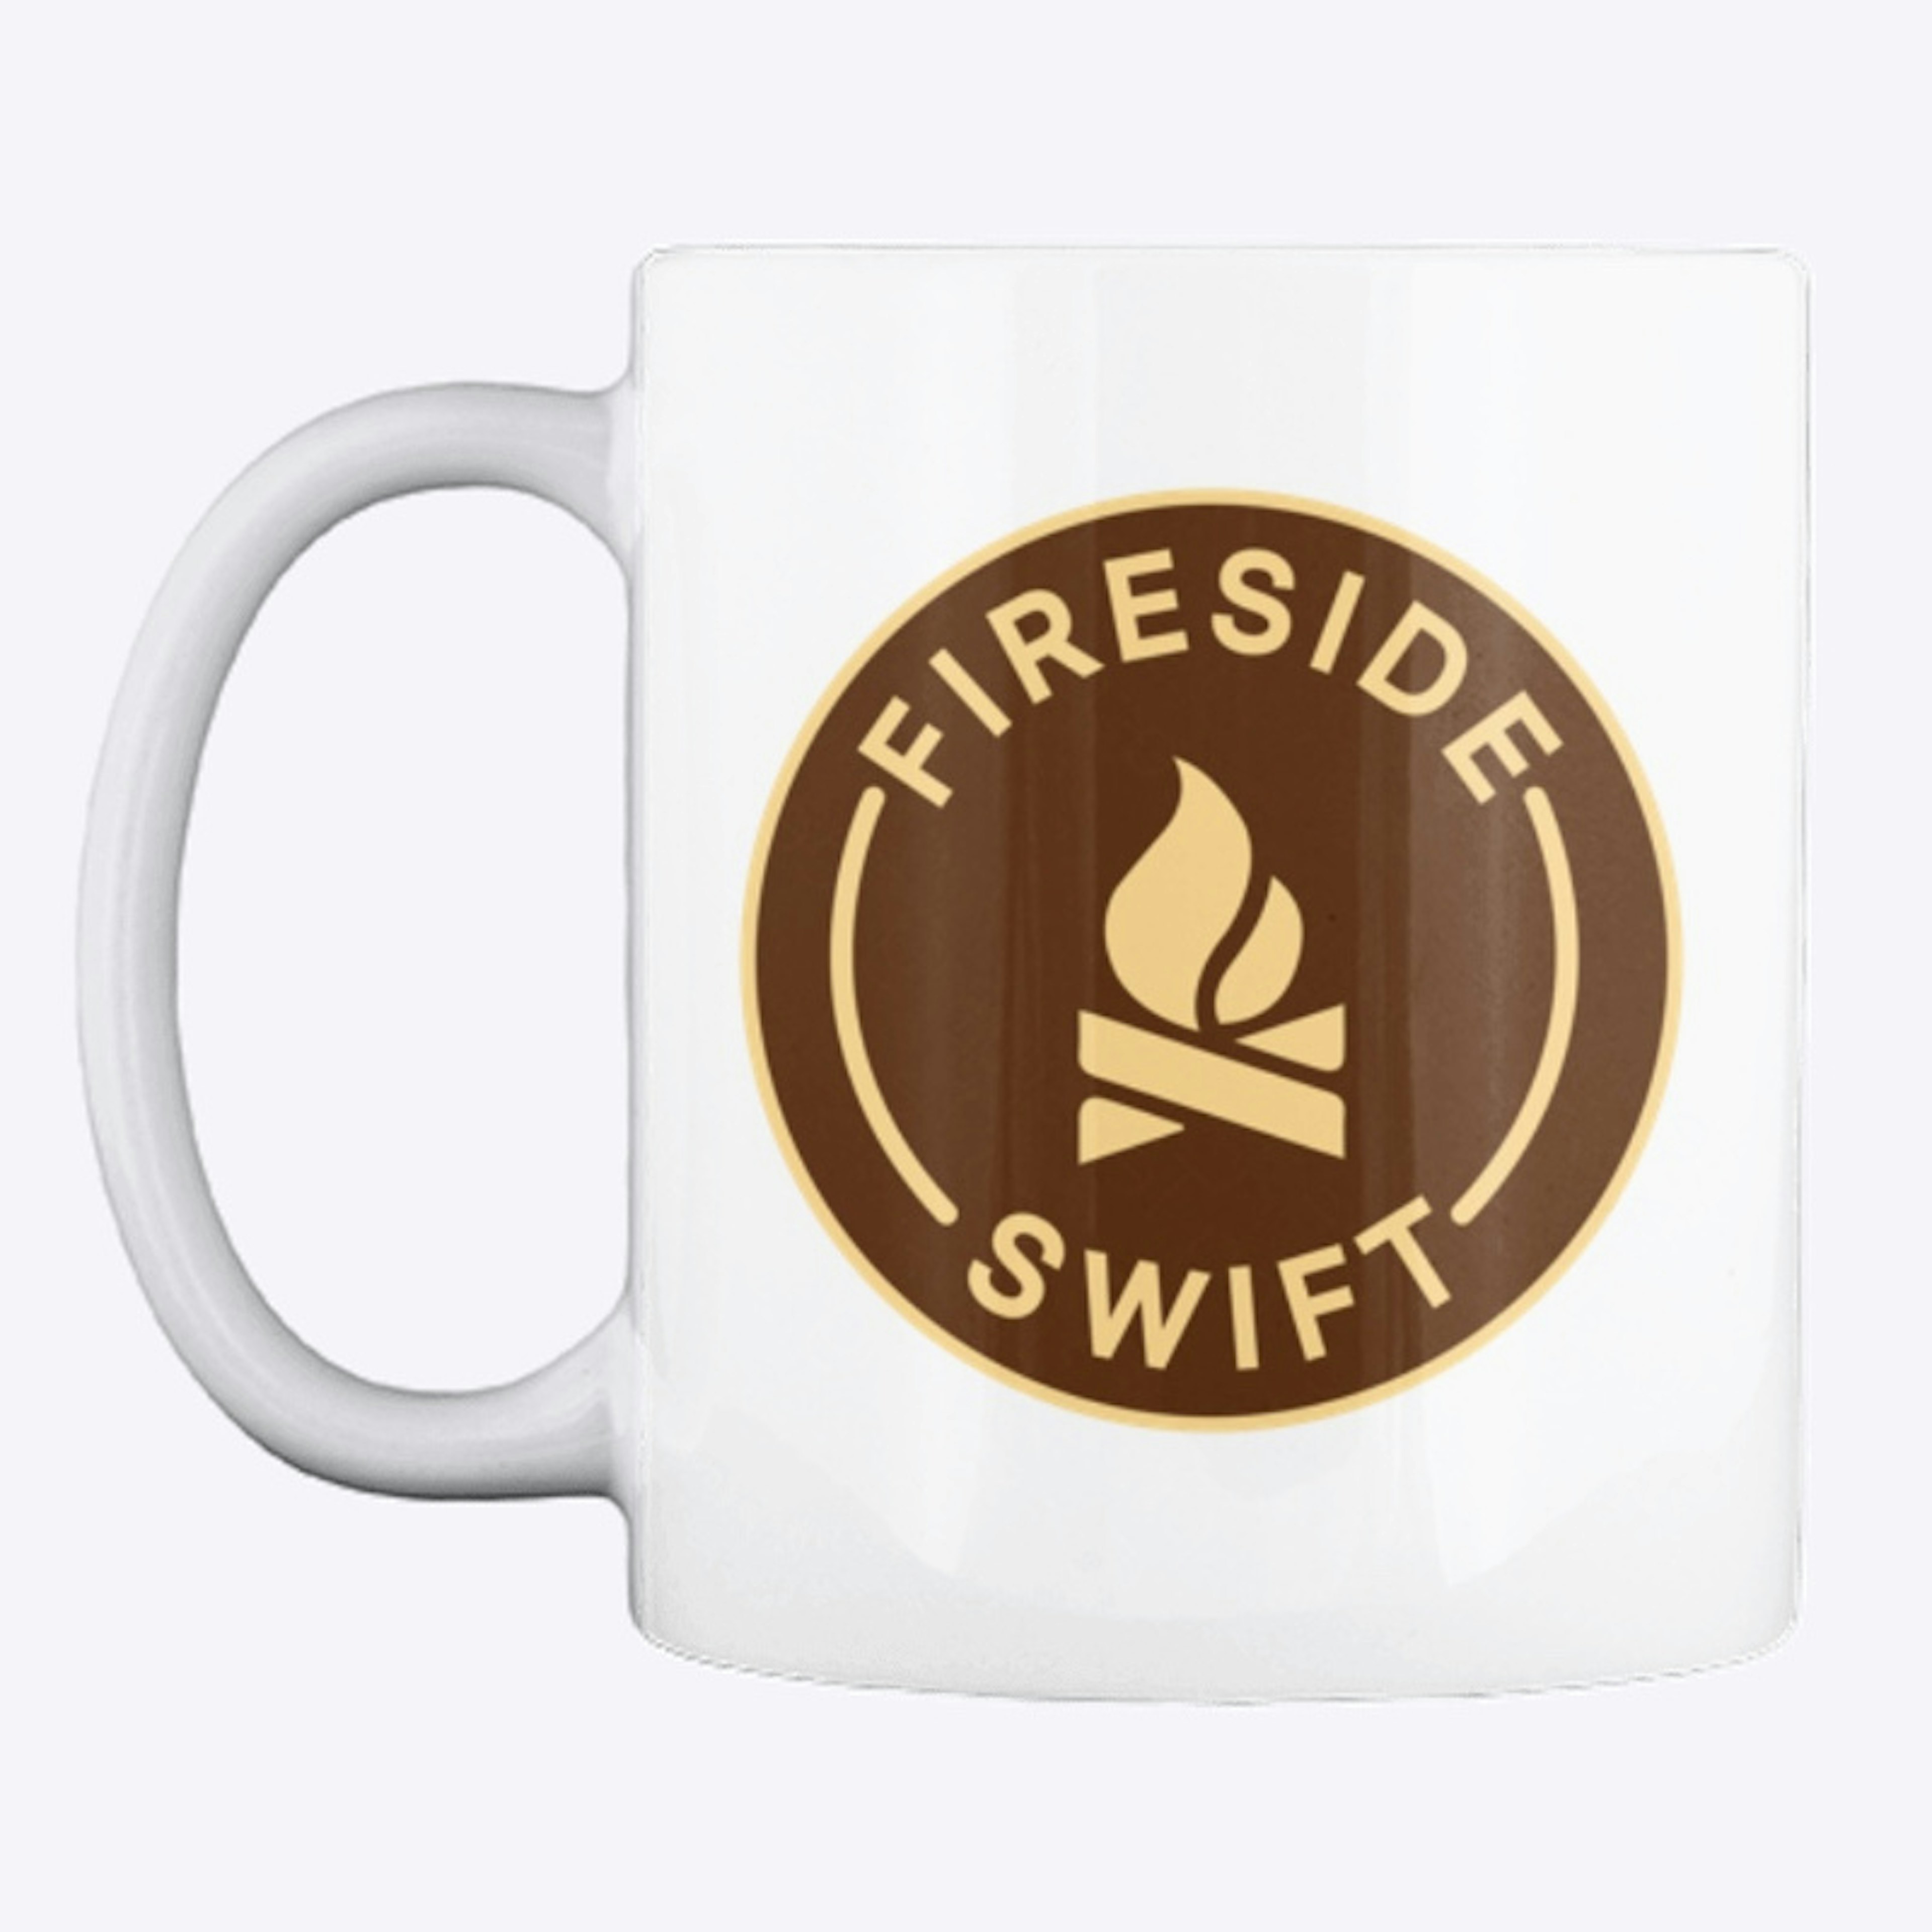 Fireside Mug - So Steve...